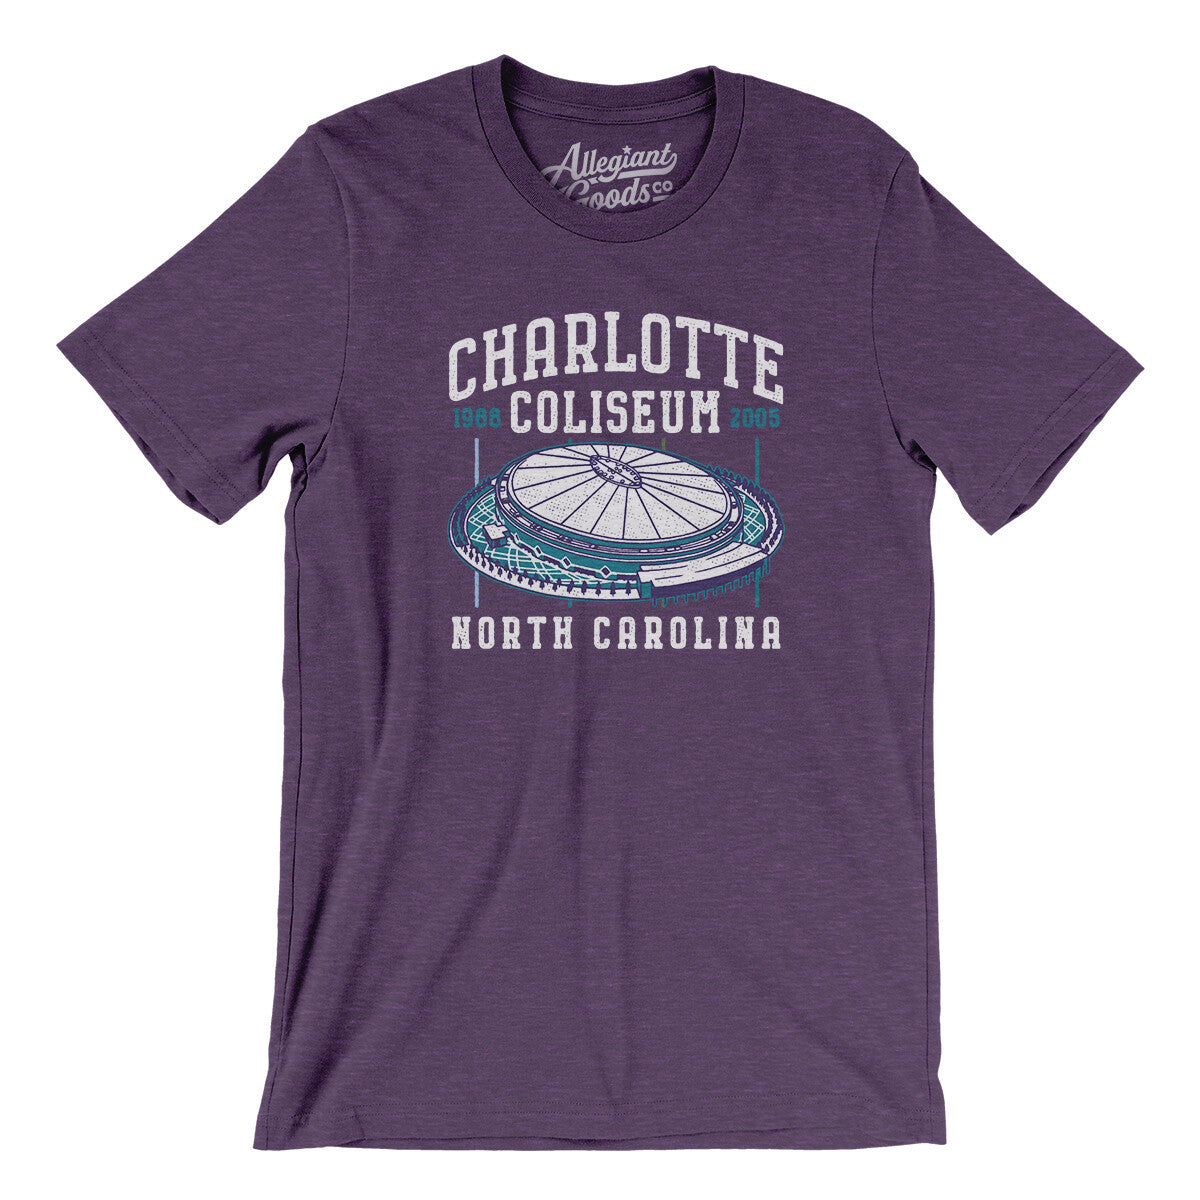 Charlotte Coliseum - Goods Men/Unisex Allegiant T-Shirt